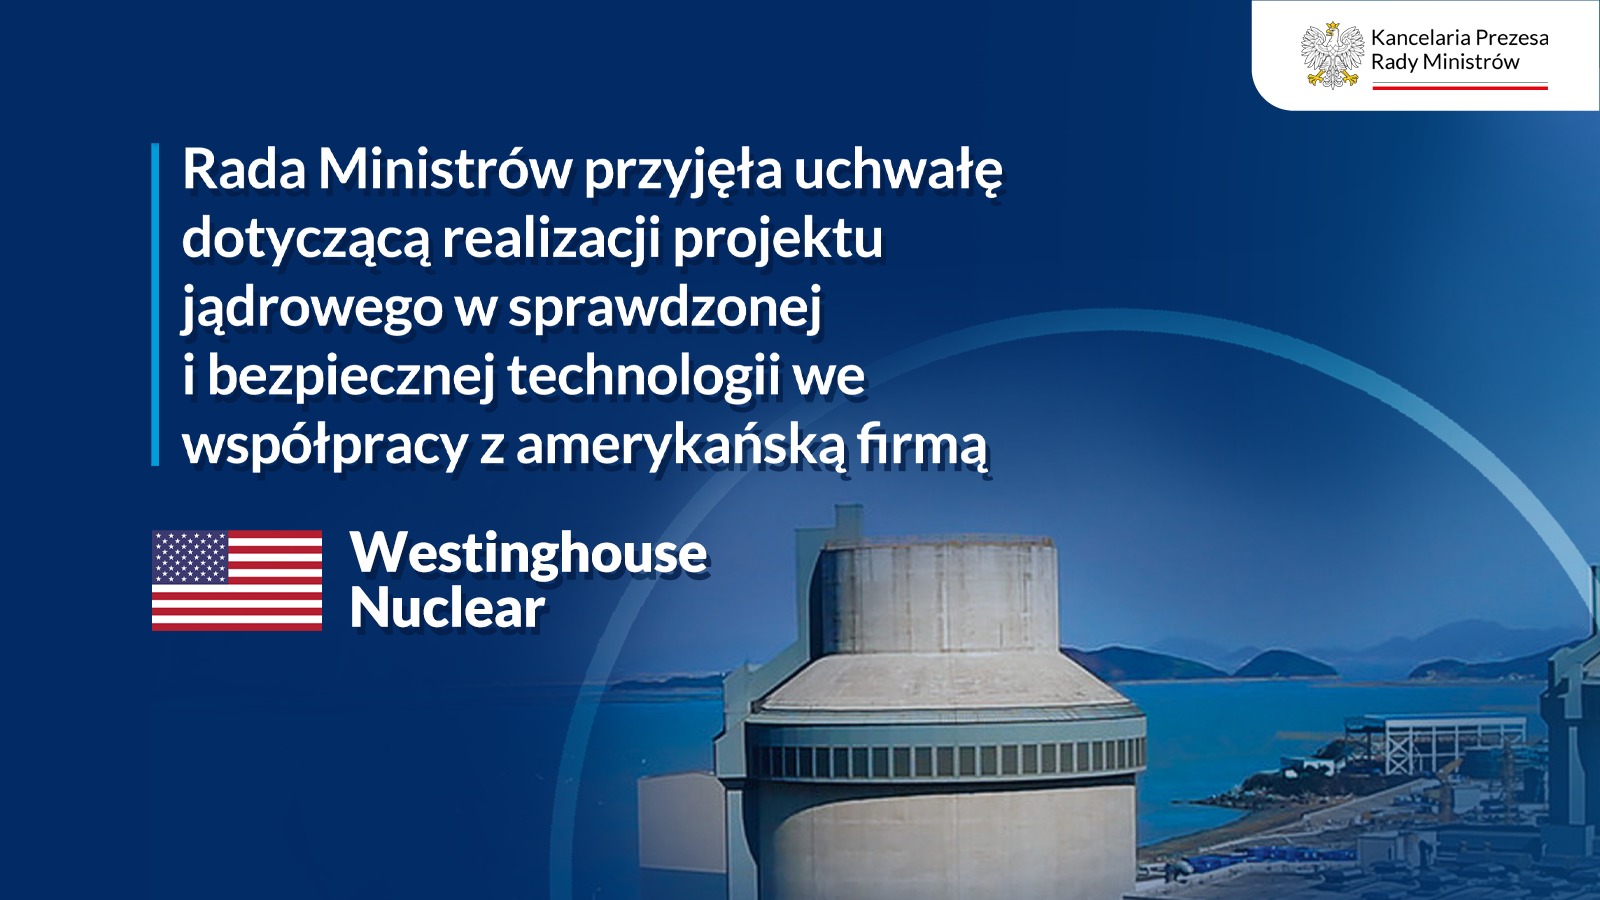 Rada Ministrów zatwierdziła współpracę polsko-amerykańską w tym zakresie.